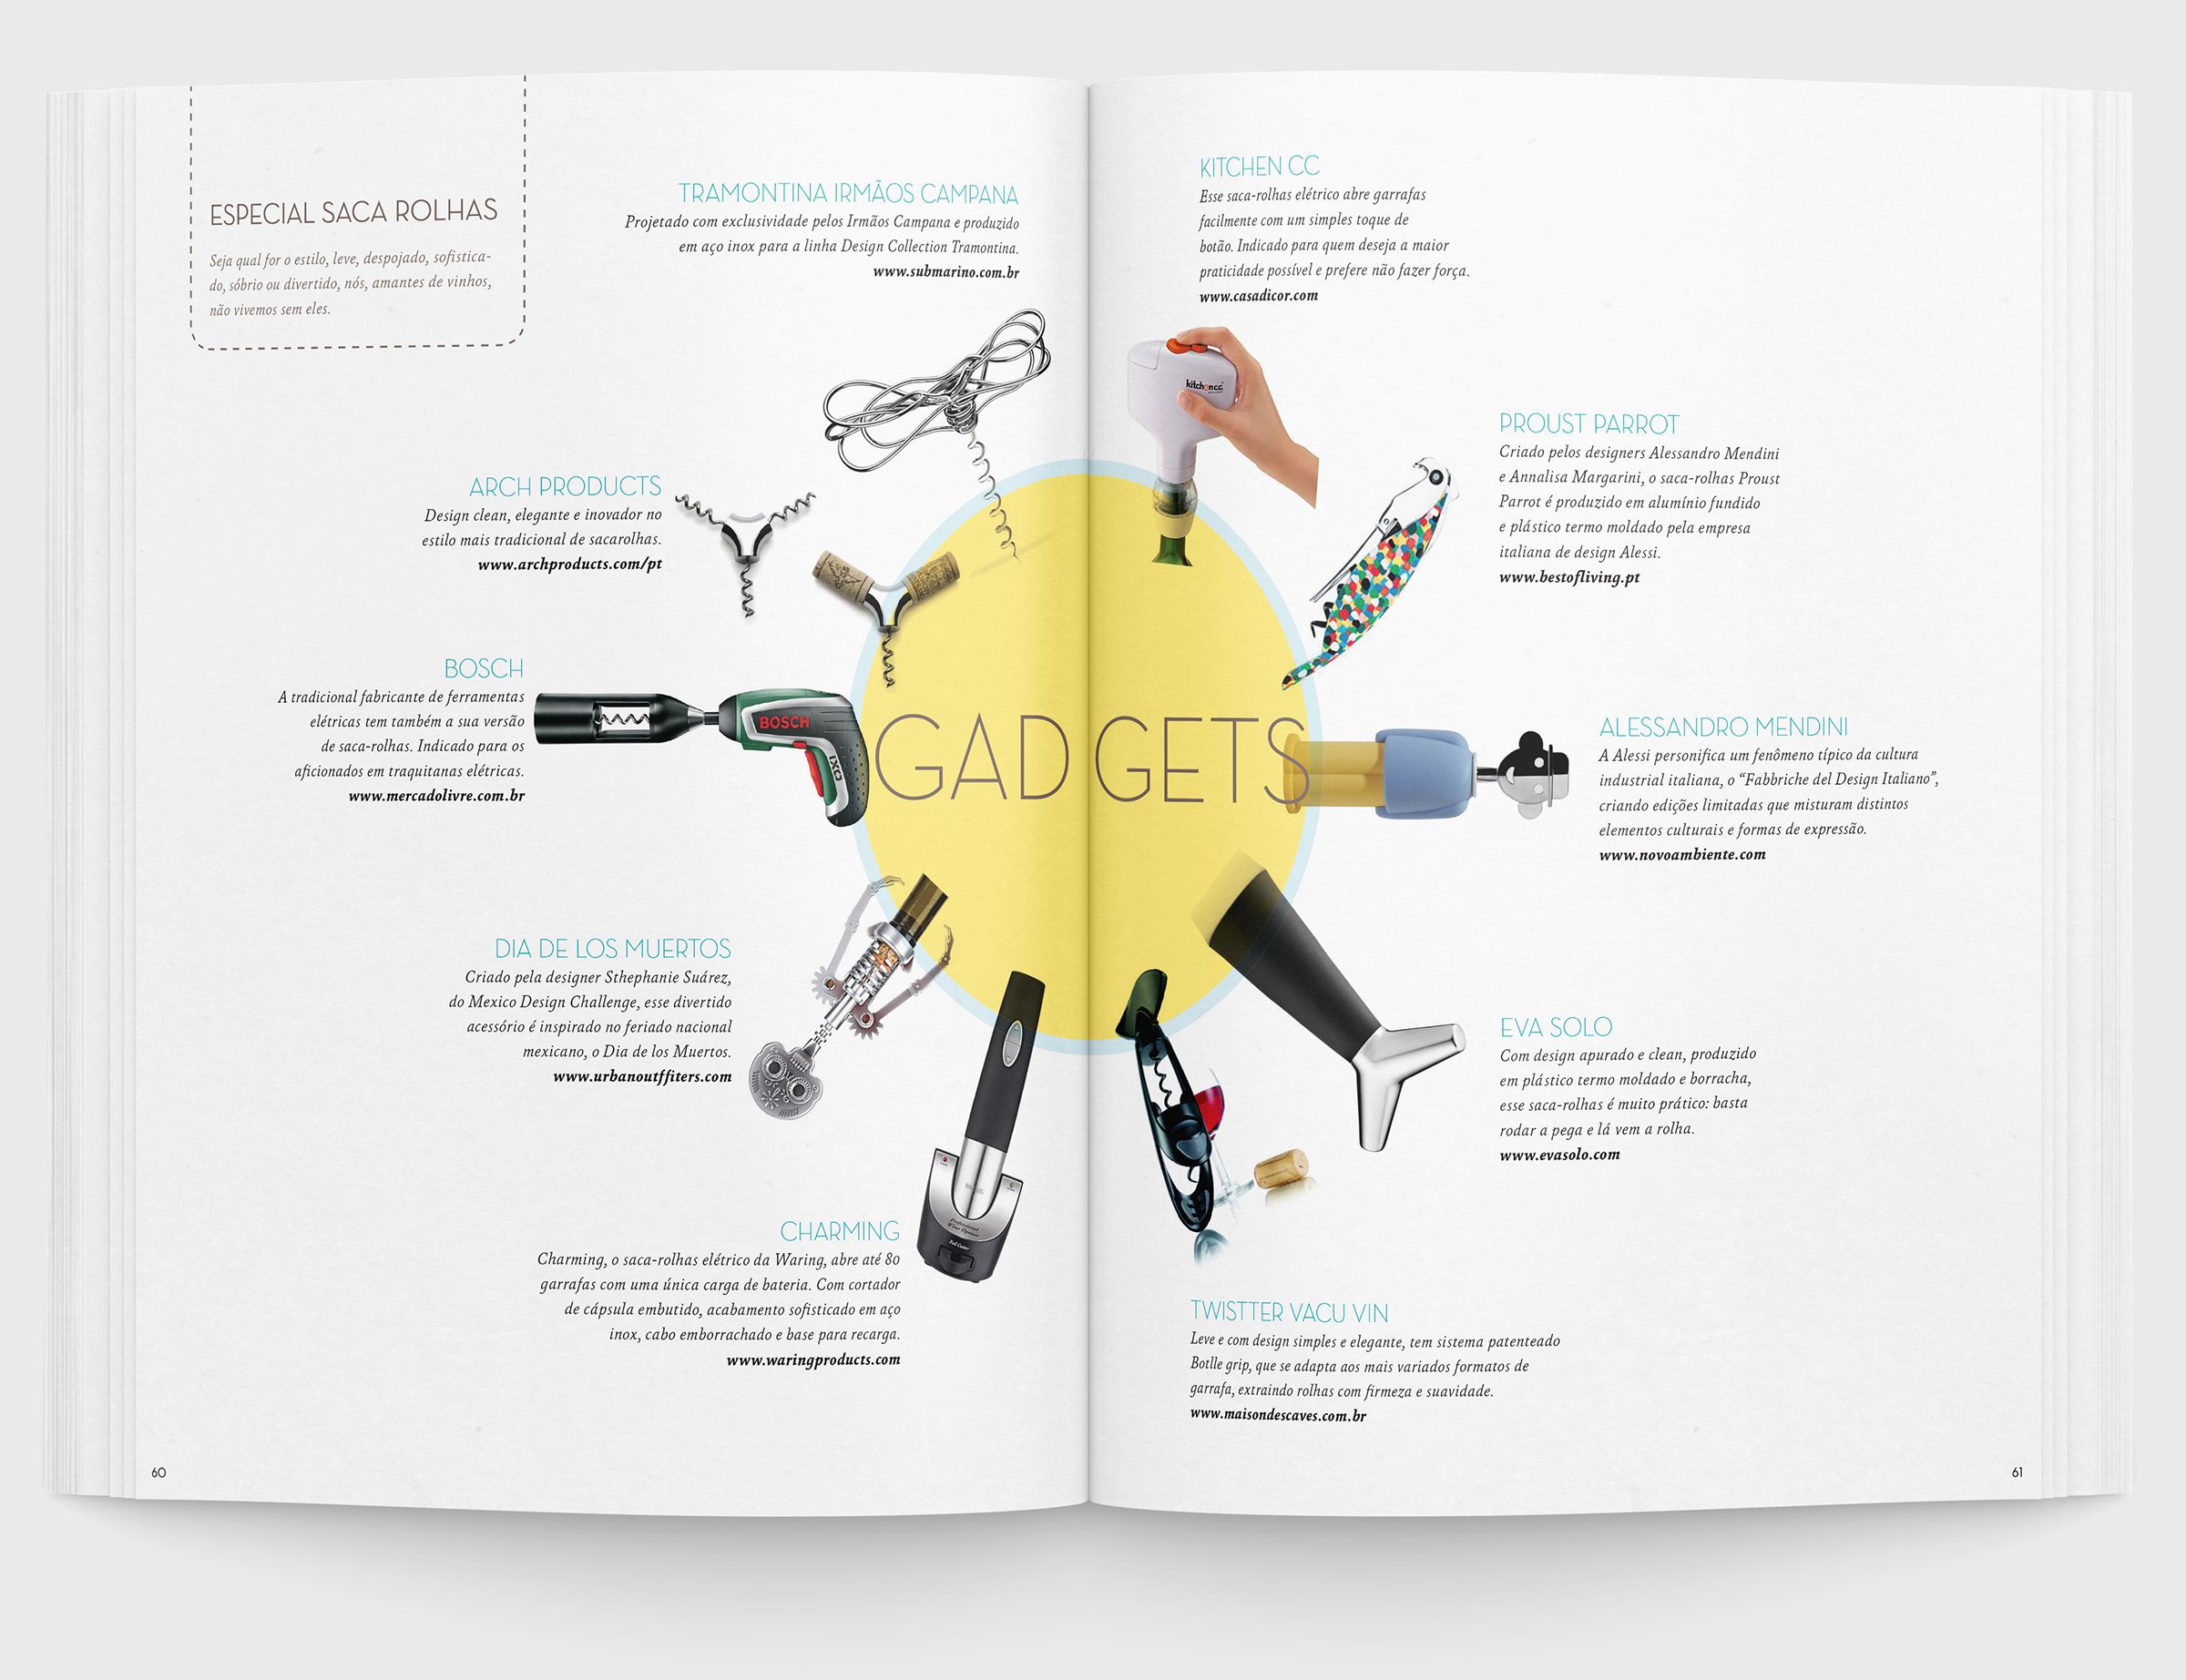 Página Dupla da seção "Gadgets" da Revista "Wine Not?" feita pela Brandium no âmbito do projeto de Identidade Visual